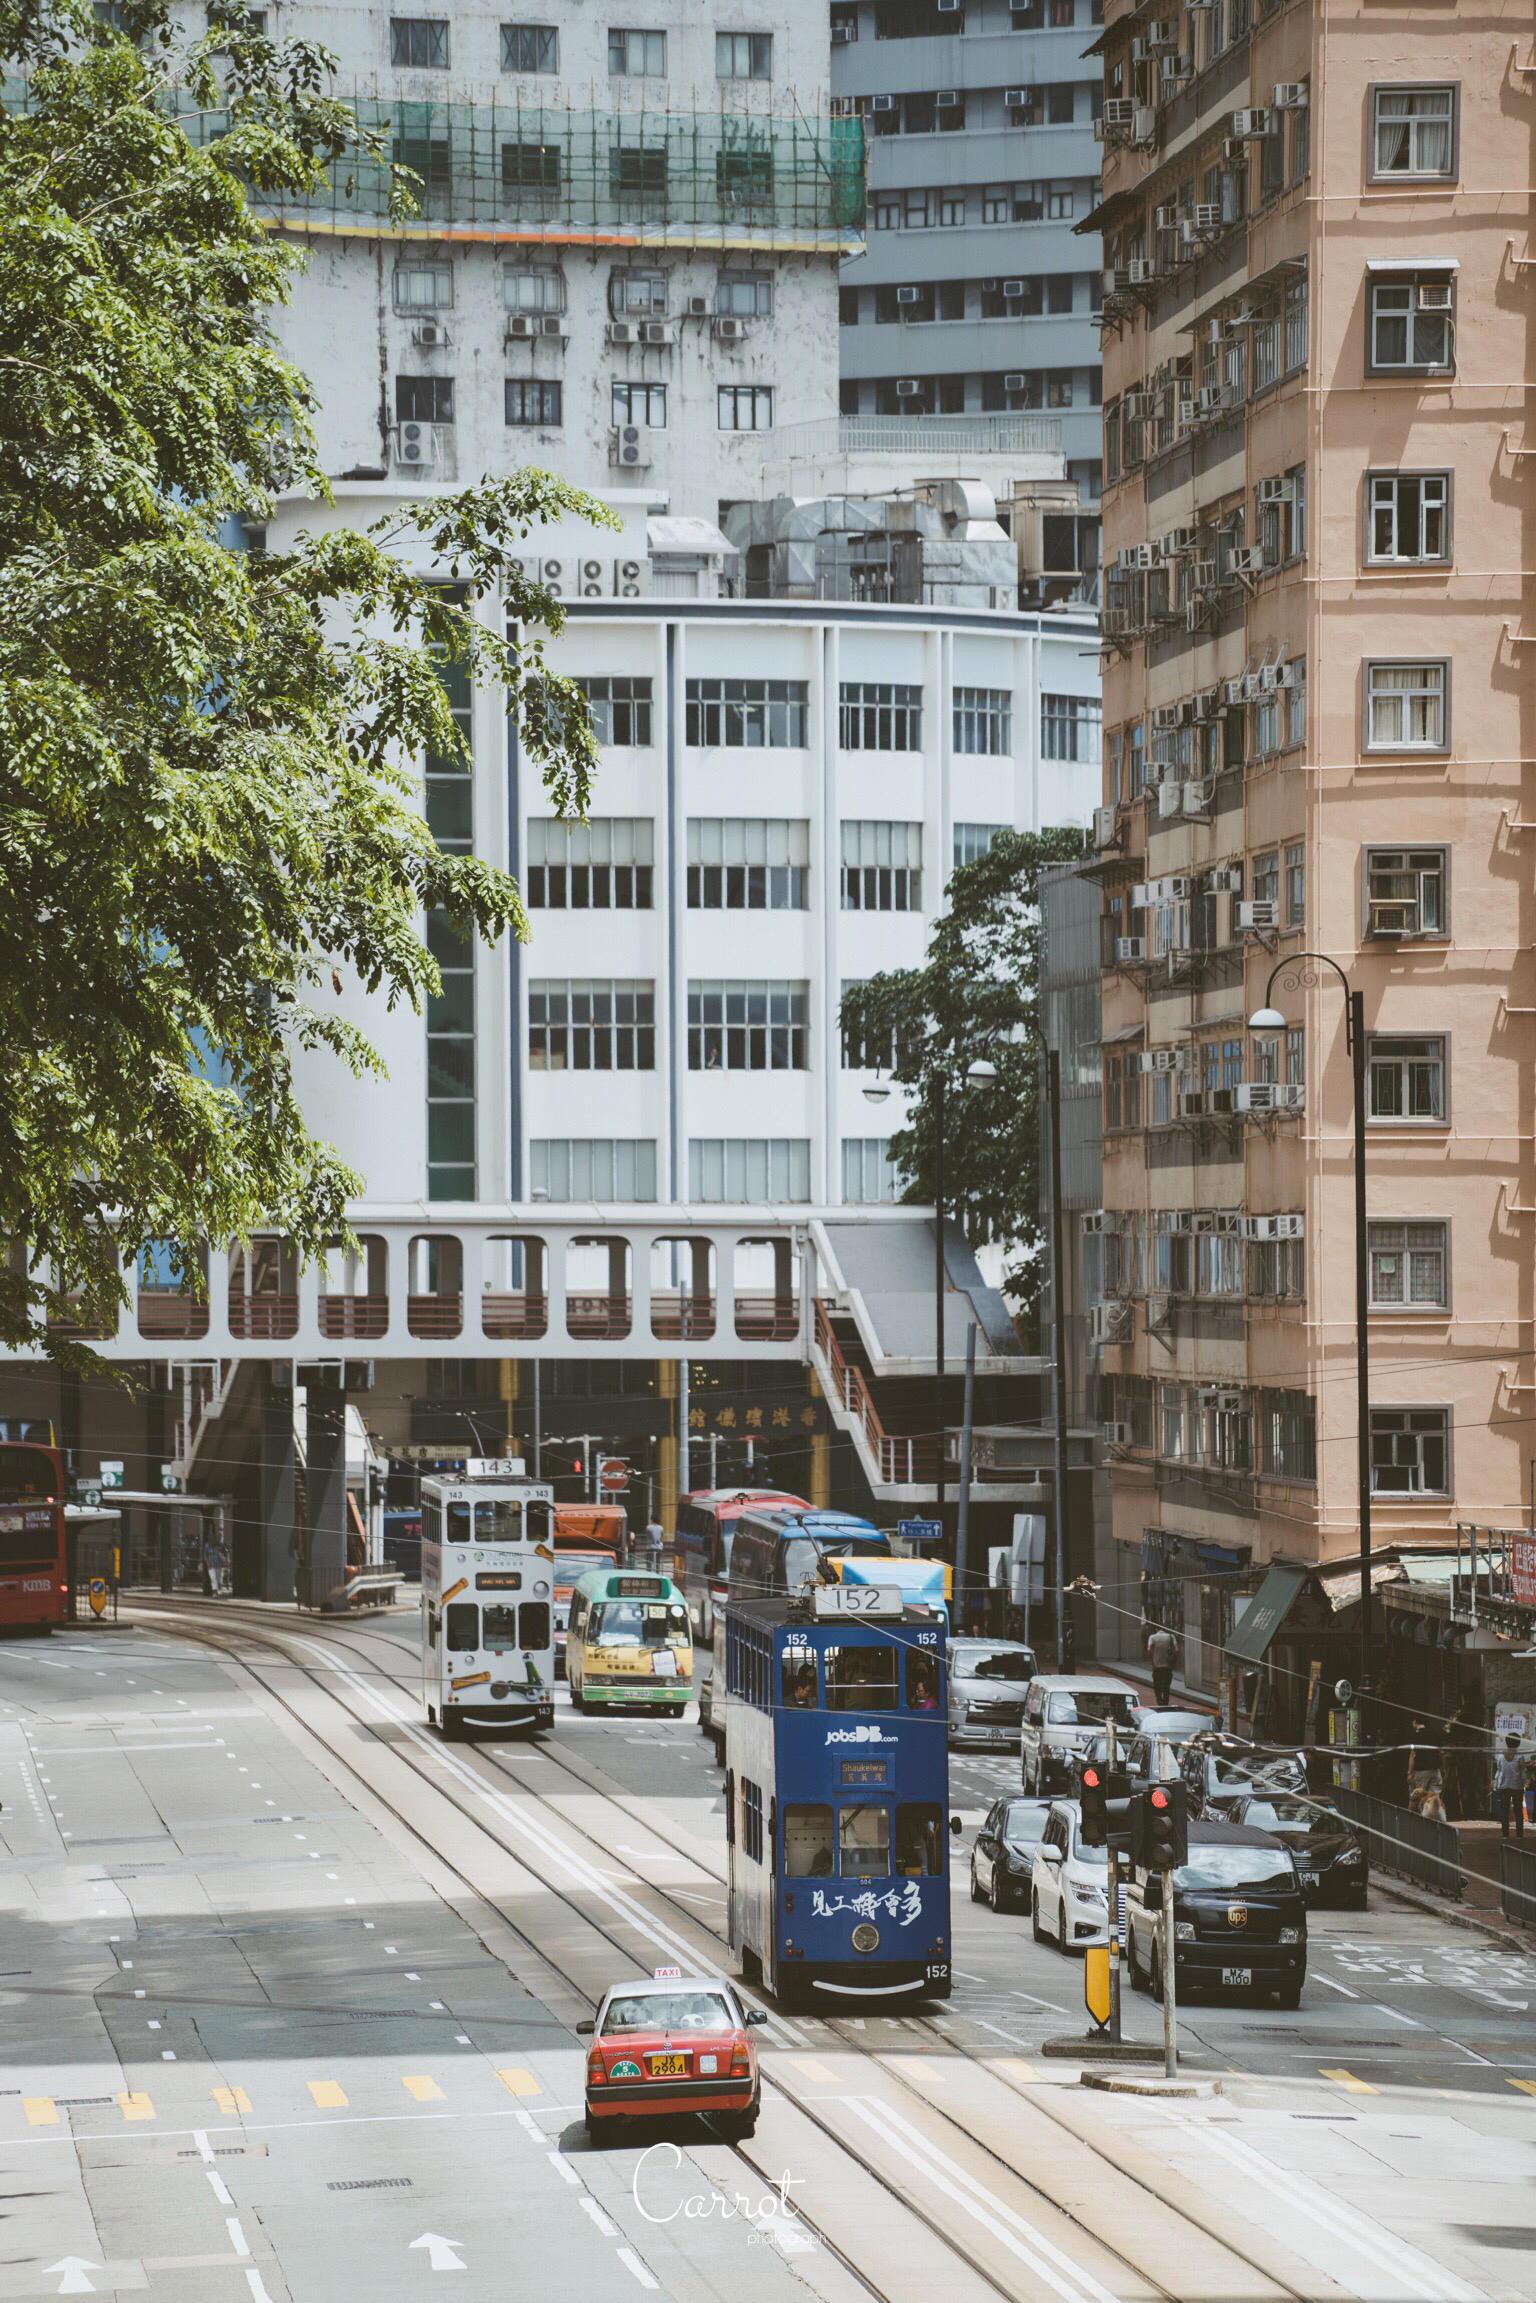 Đi bộ dọc đường phố Hong Kong, bạn sẽ nhìn thấy nhiều chiếc xe điện chạy với tốc độ chắc chắn sẽ khiến bạn thích thú. Hãy tận hưởng thời gian của bạn ở Hong Kong với sức khỏe và tiện nghi của chiếc xe điện này.